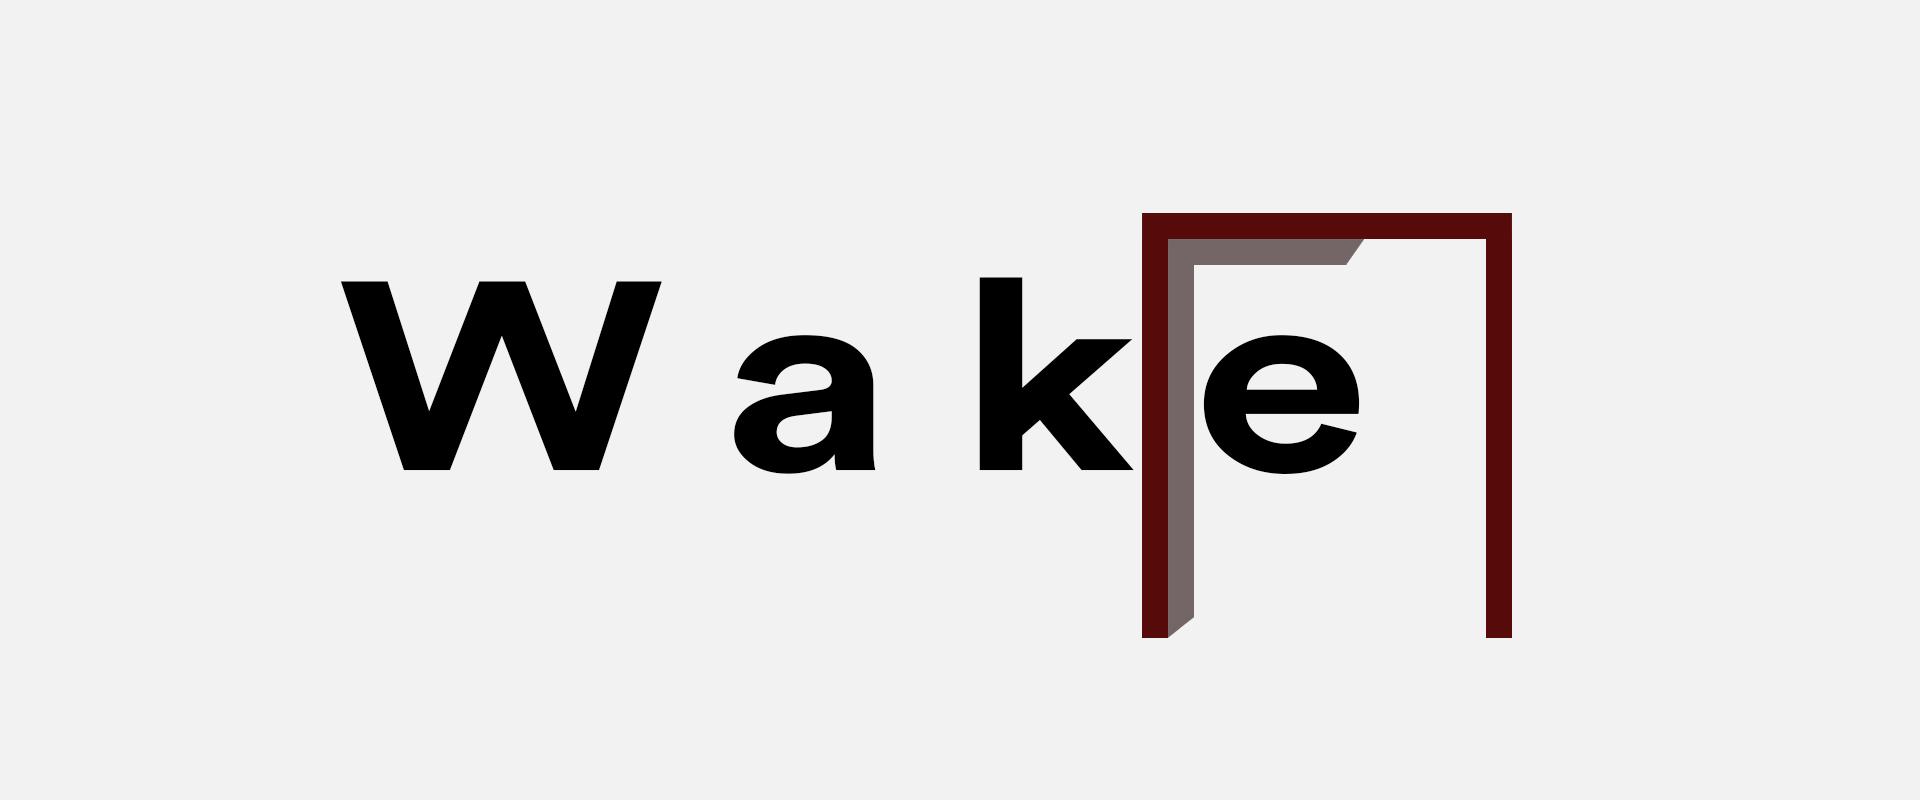 Wake - Marka